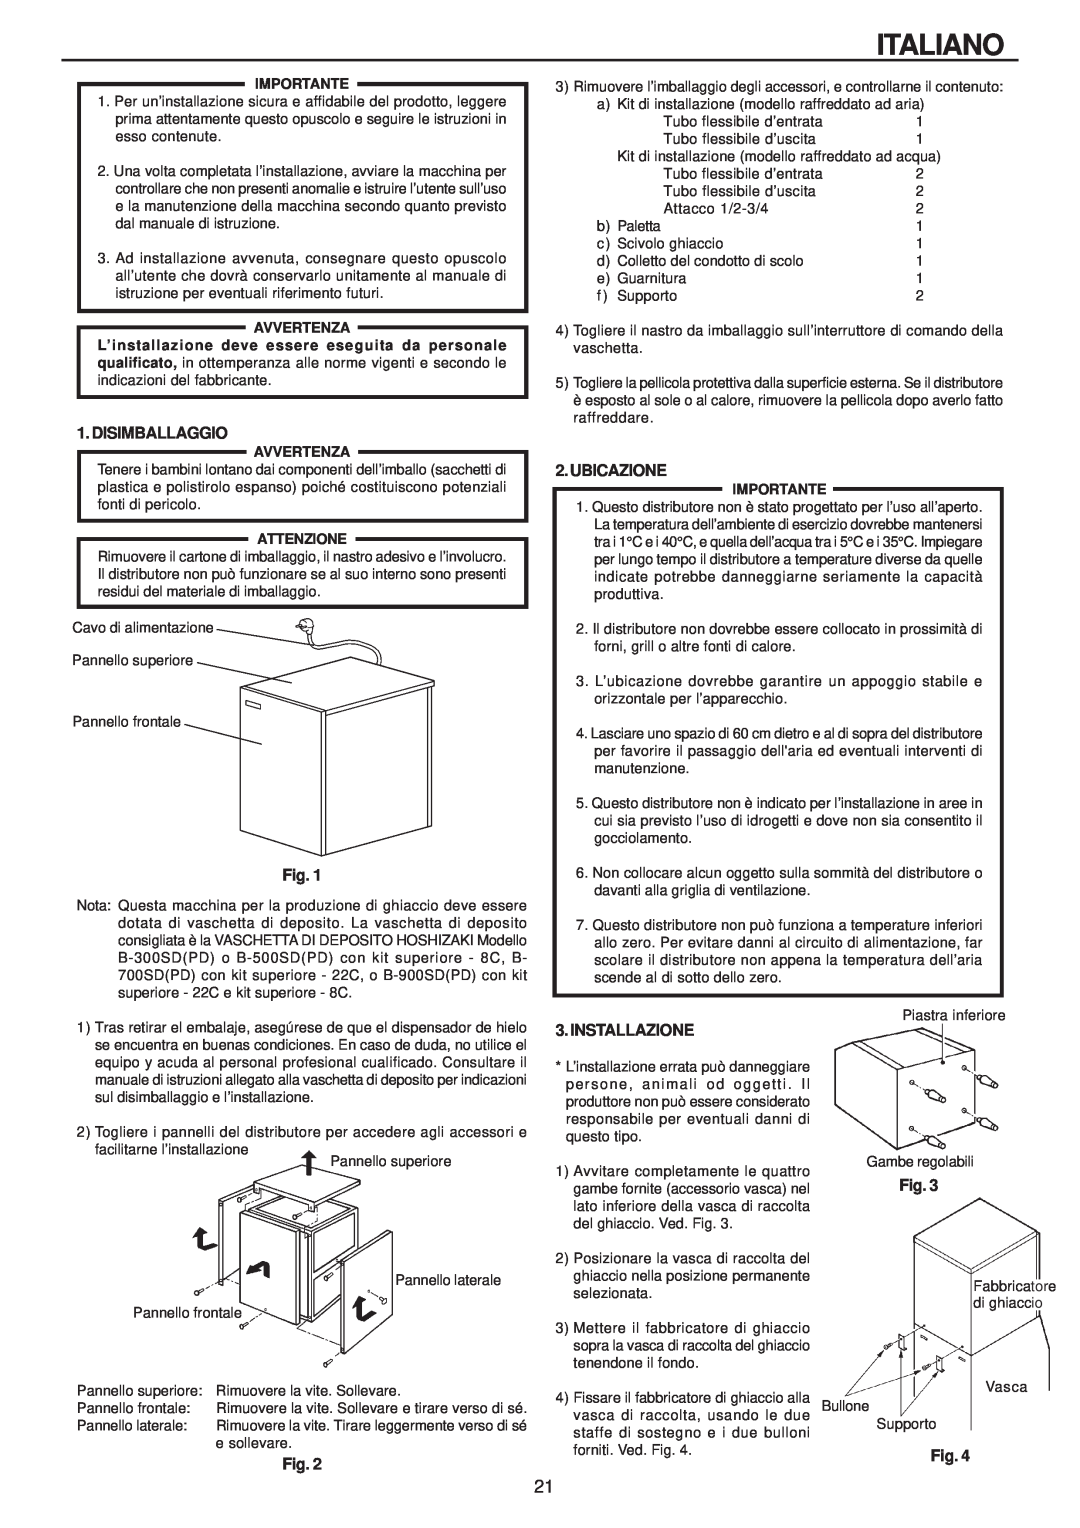 Hoshizaki IM-240AME, IM-240AWME installation manual Italiano, Installazione, Avvertenza, Attenzione, Importante 